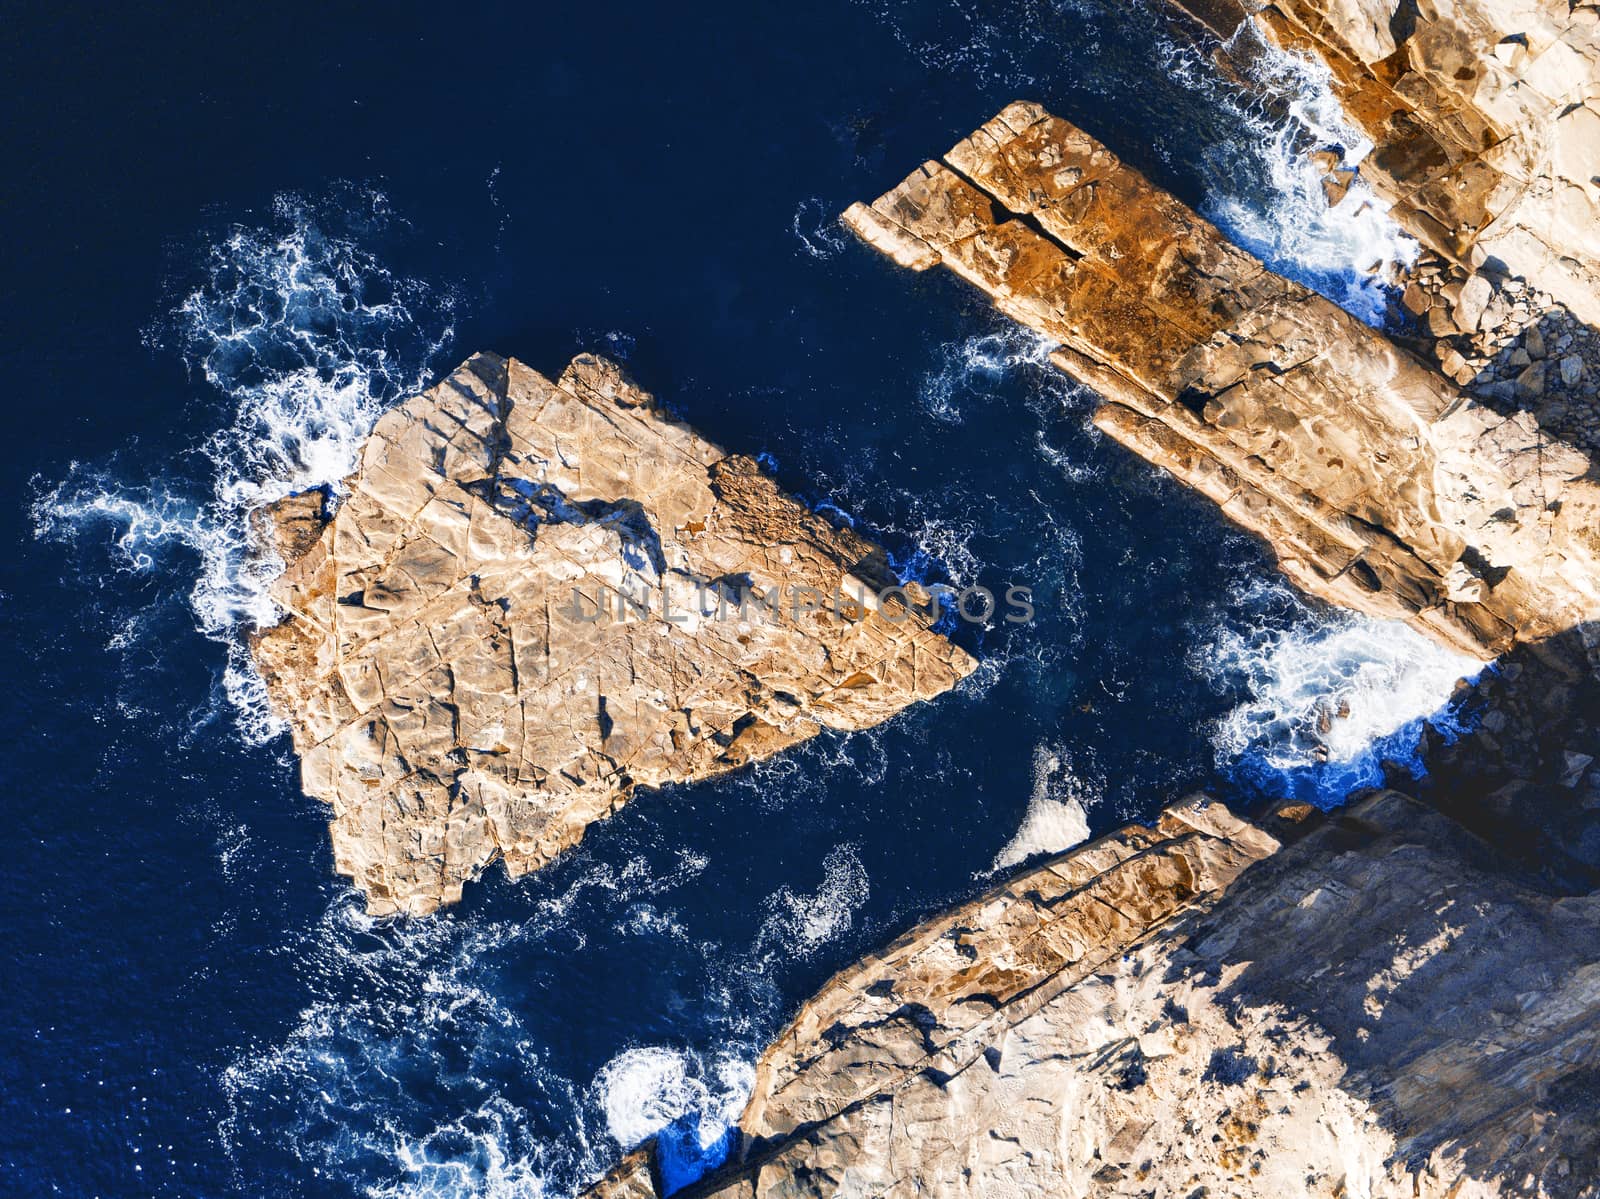 Slabs of exposed rock in deep ocean water off the coast of Australia